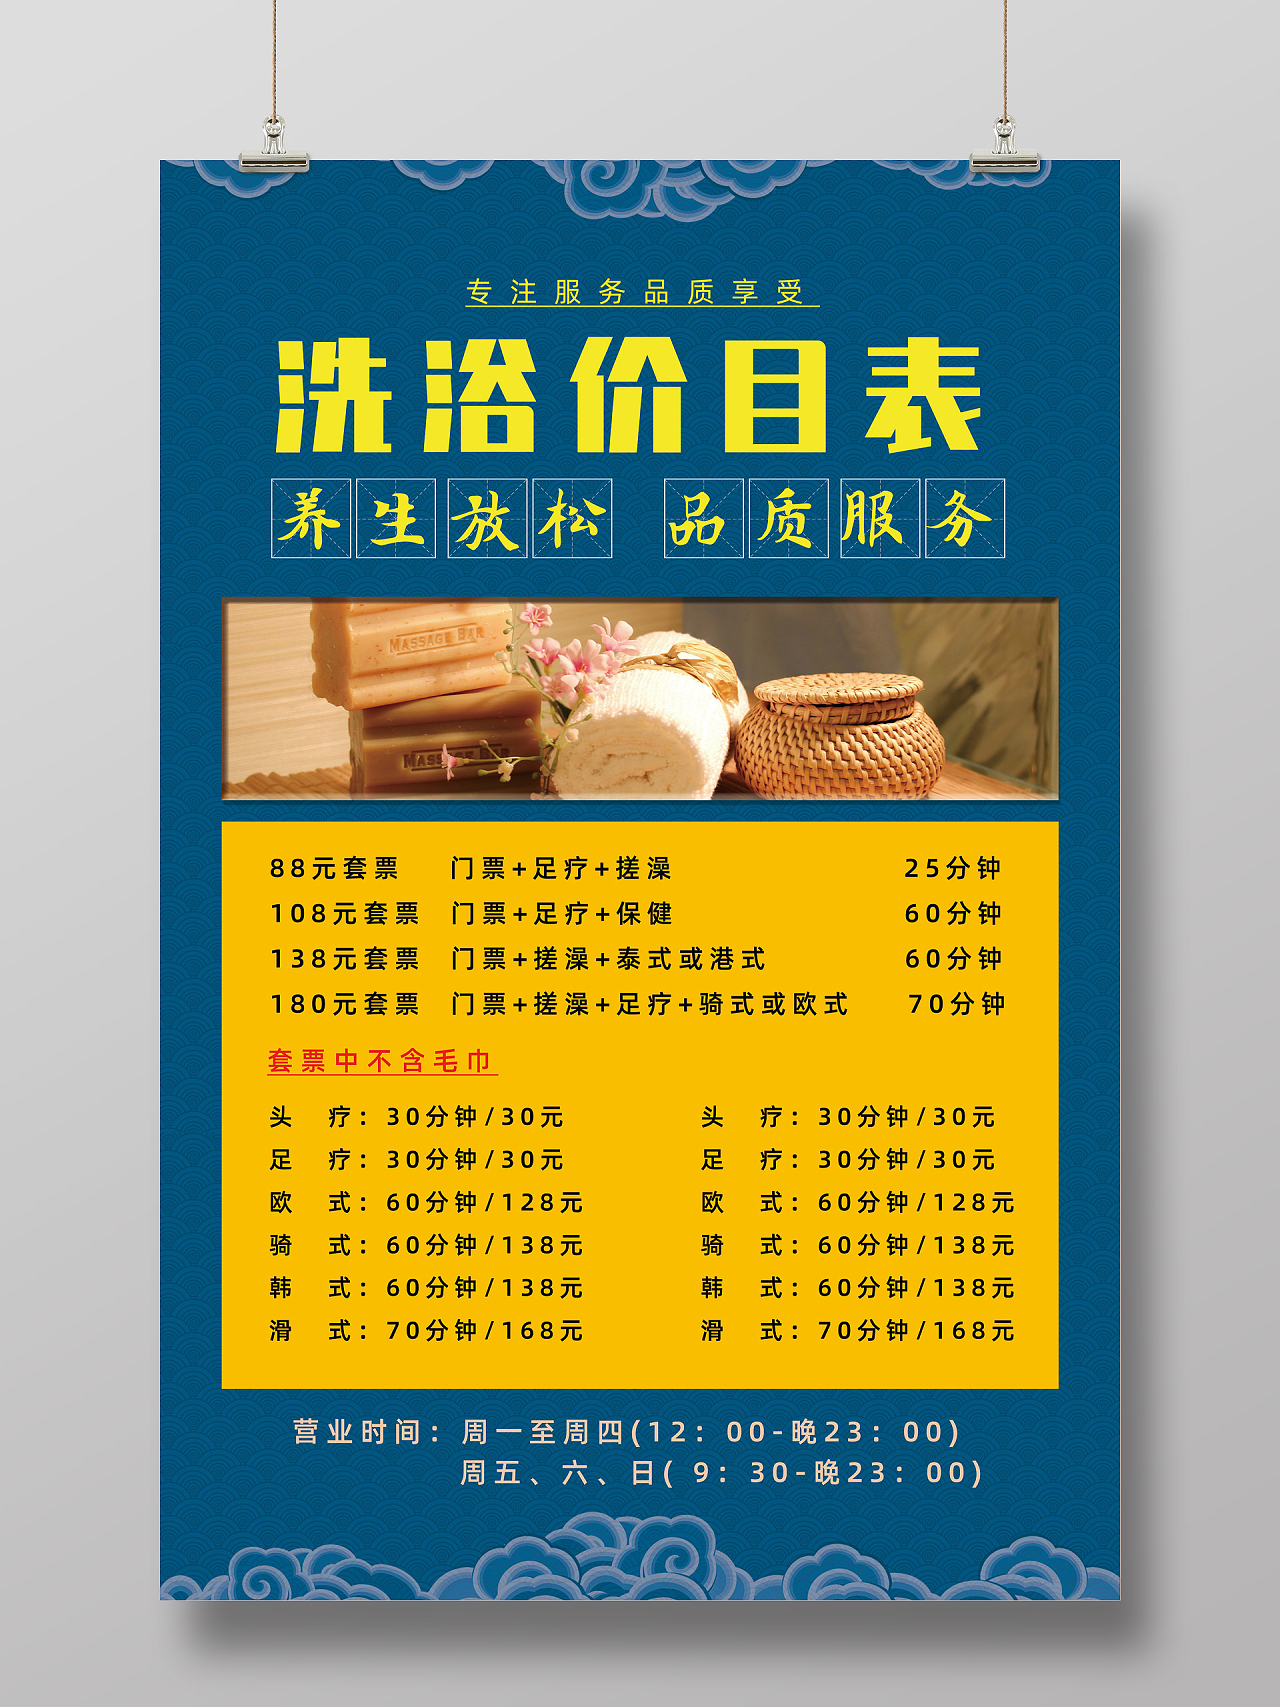 蓝色简约中国风养生放松品质服务美容洗浴价格表洗浴价目表